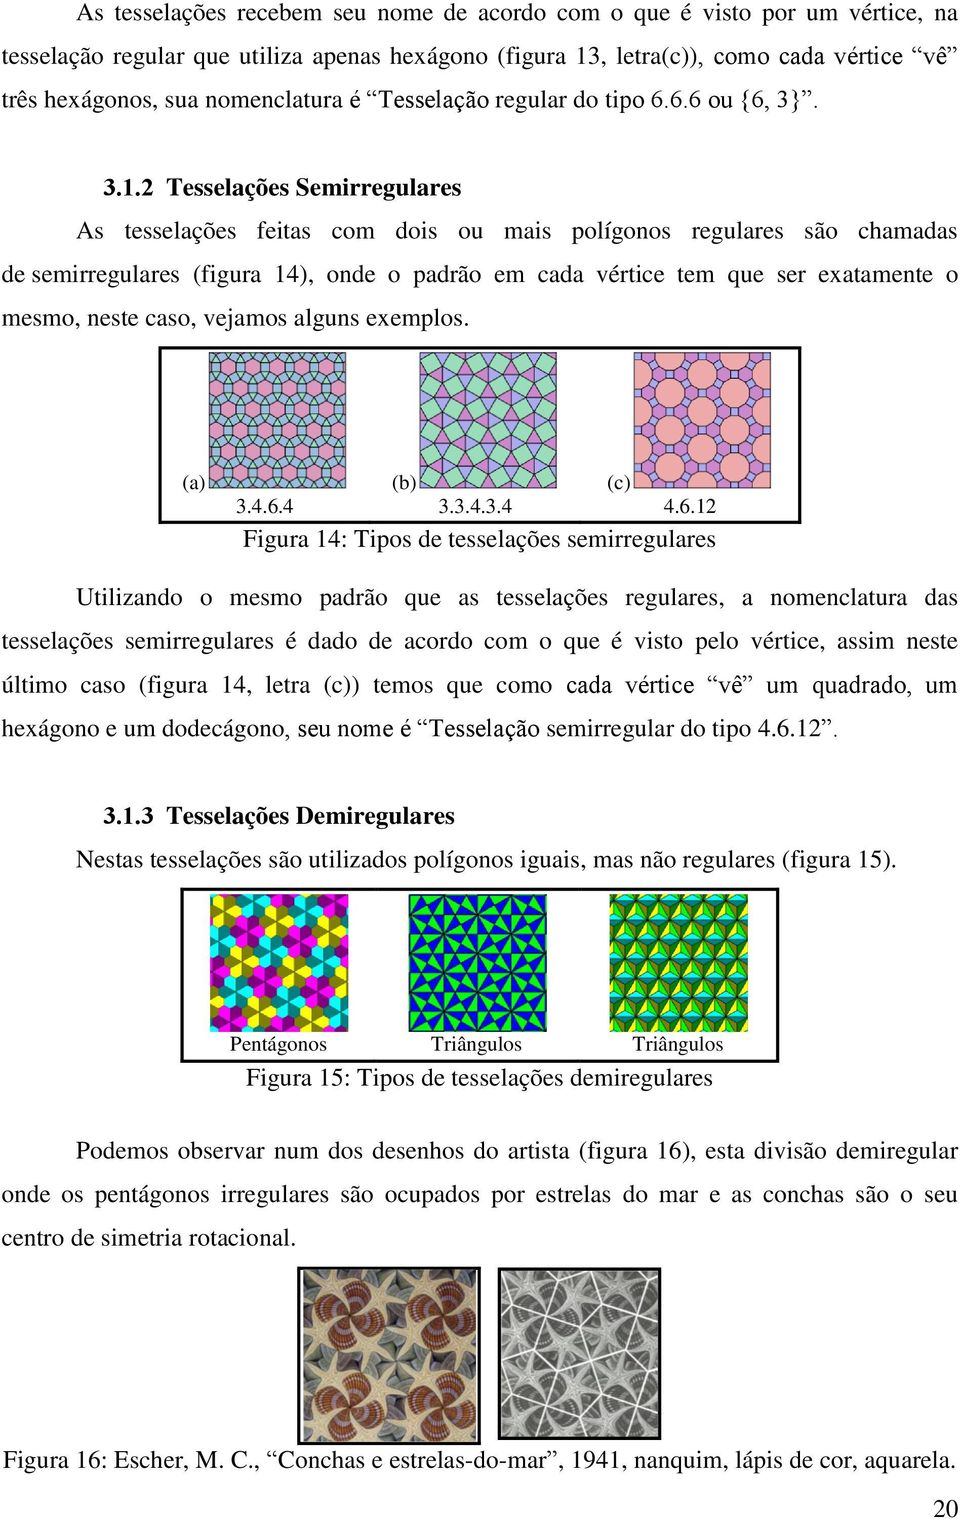 2 Tesselações Semirregulares As tesselações feitas com dois ou mais polígonos regulares são chamadas de semirregulares (figura 14), onde o padrão em cada vértice tem que ser exatamente o mesmo, neste